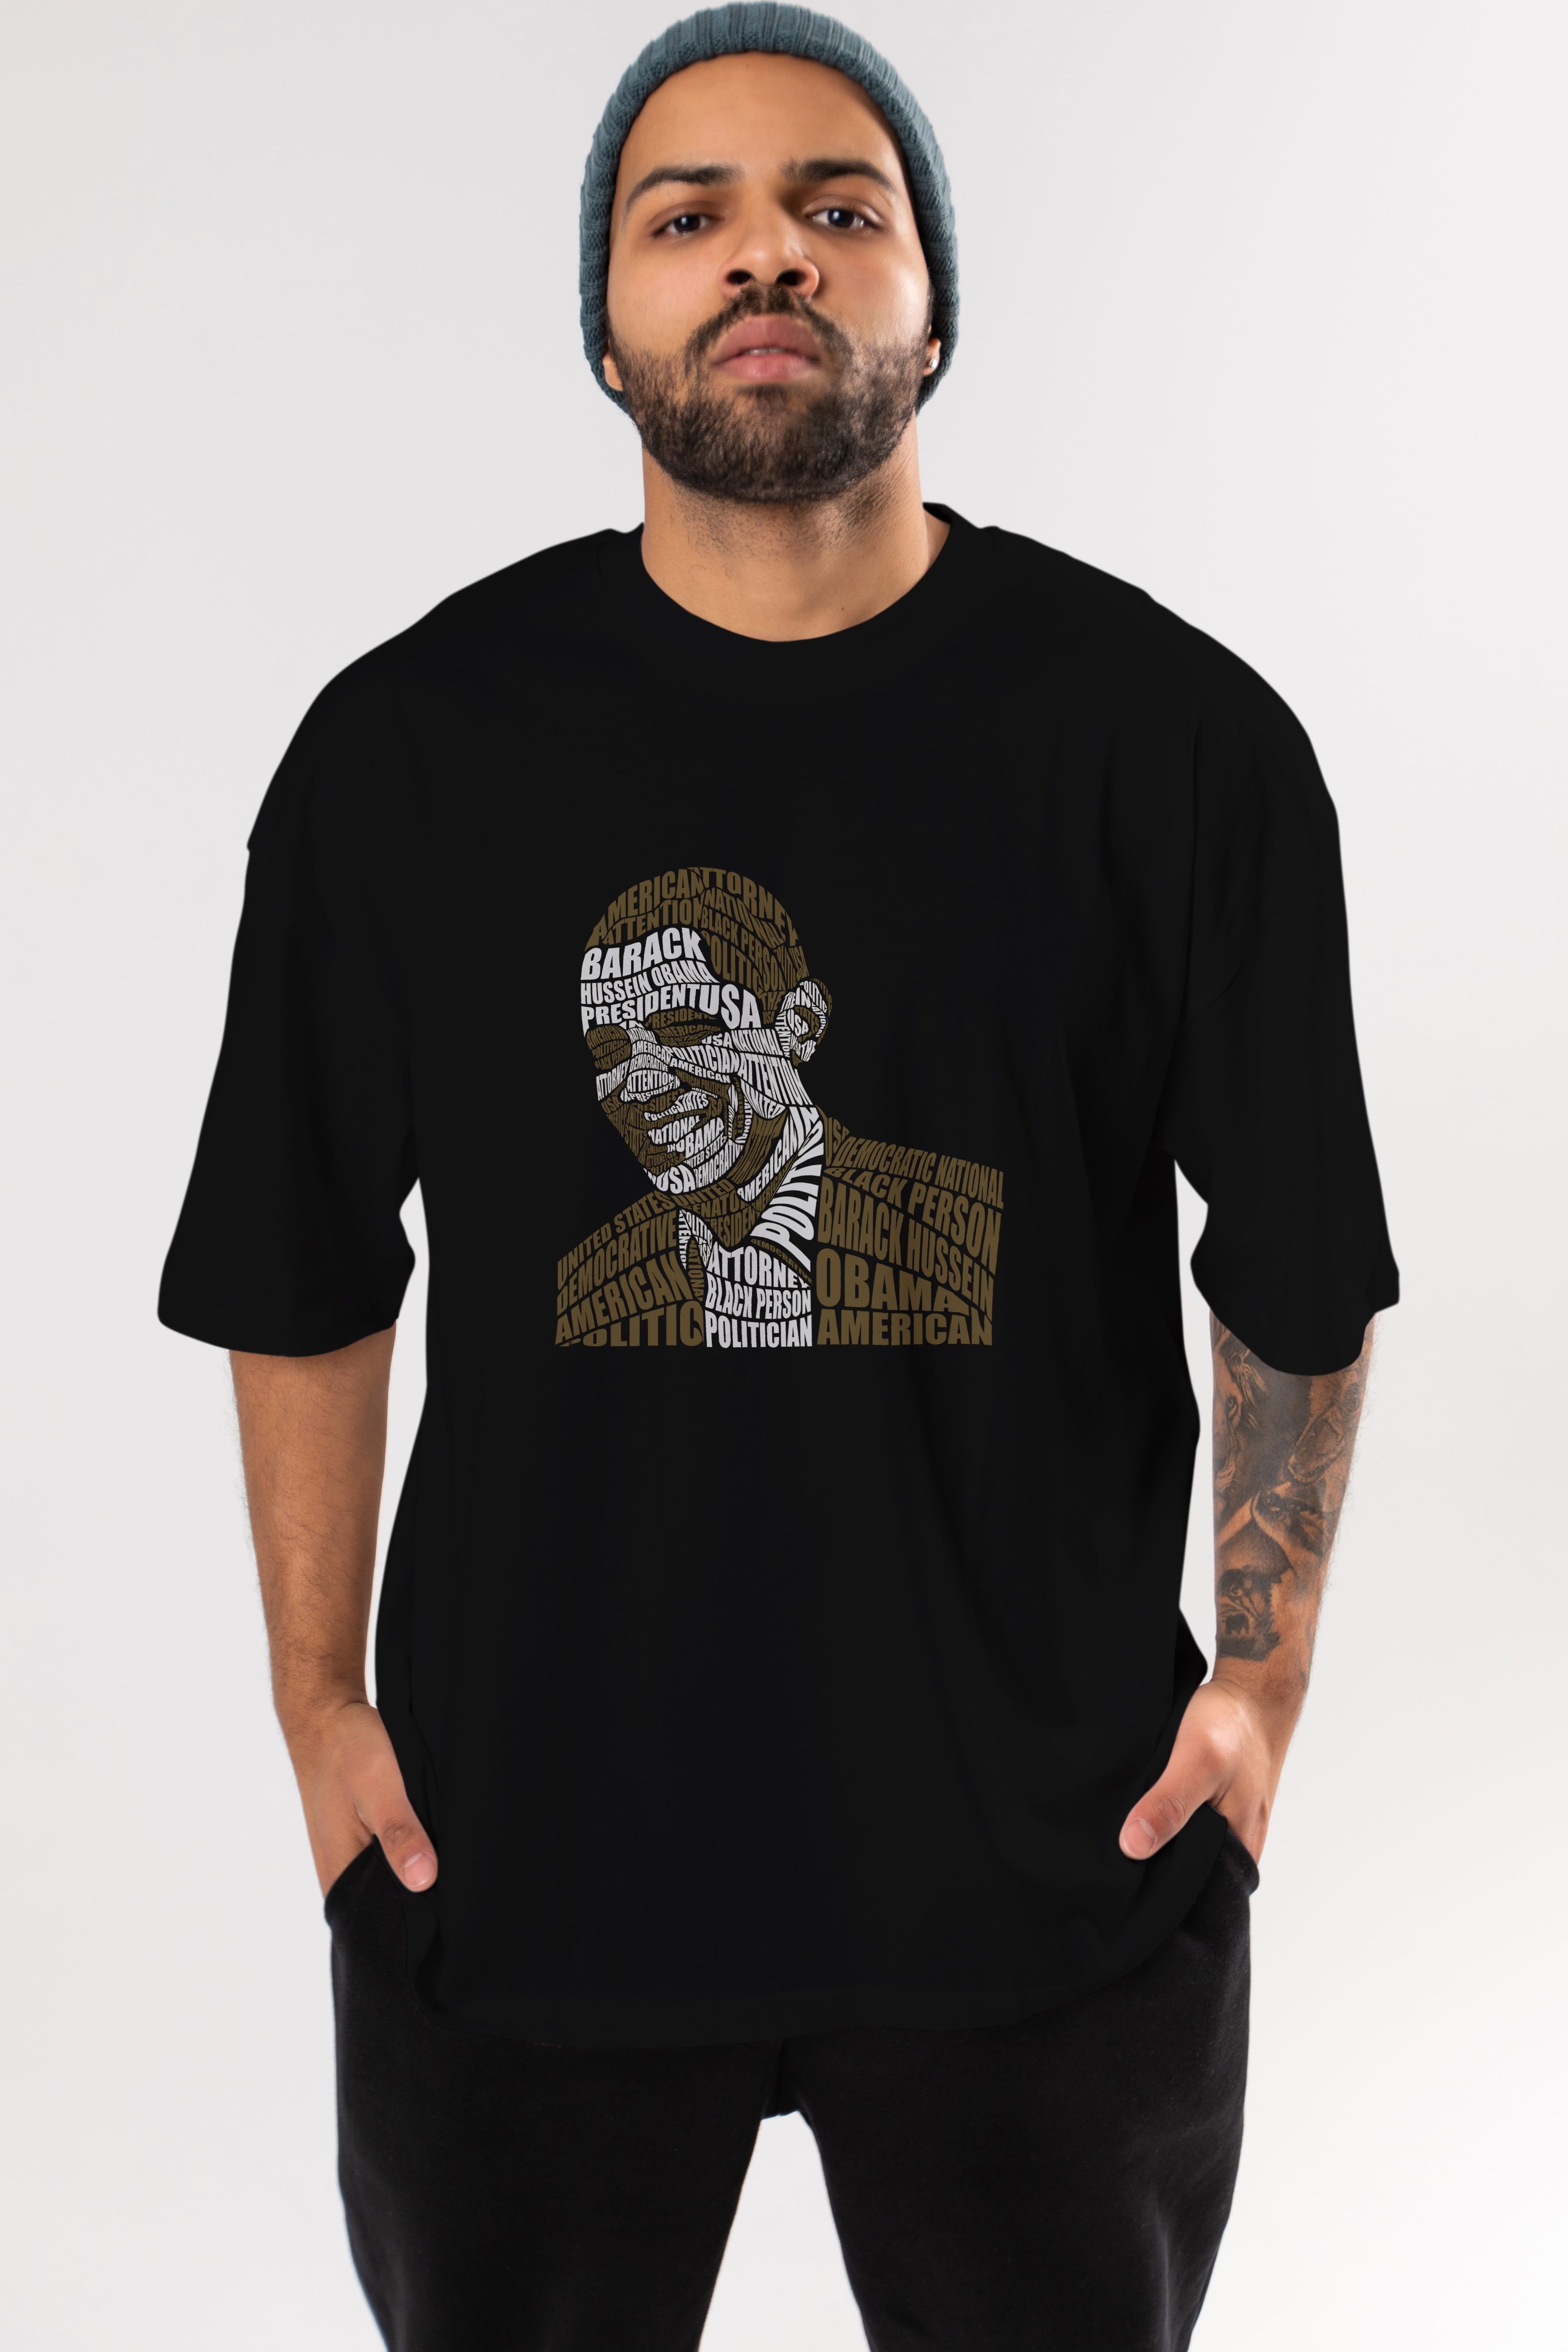 Obama Calligram Ön Baskılı Oversize t-shirt %100 pamuk Erkek Kadın Unisex